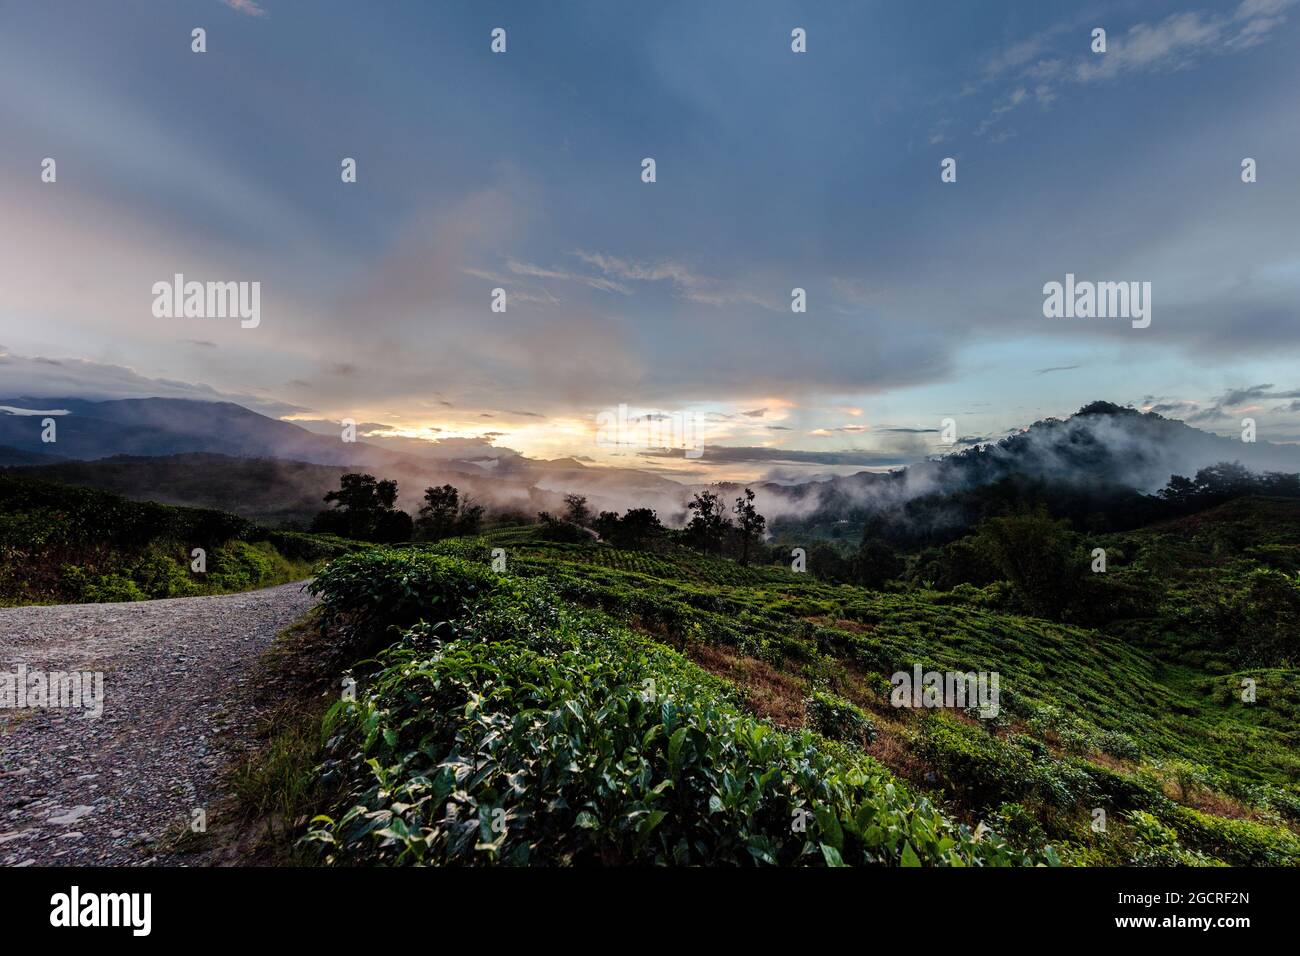 En attendant la nuit, coucher de soleil dans une plantation de thé à Sabah, Malaisie, Bornéo, Sabah, Malaisie orientale. Nuages grimpant au-dessus des montagnes. Coloré clou Banque D'Images